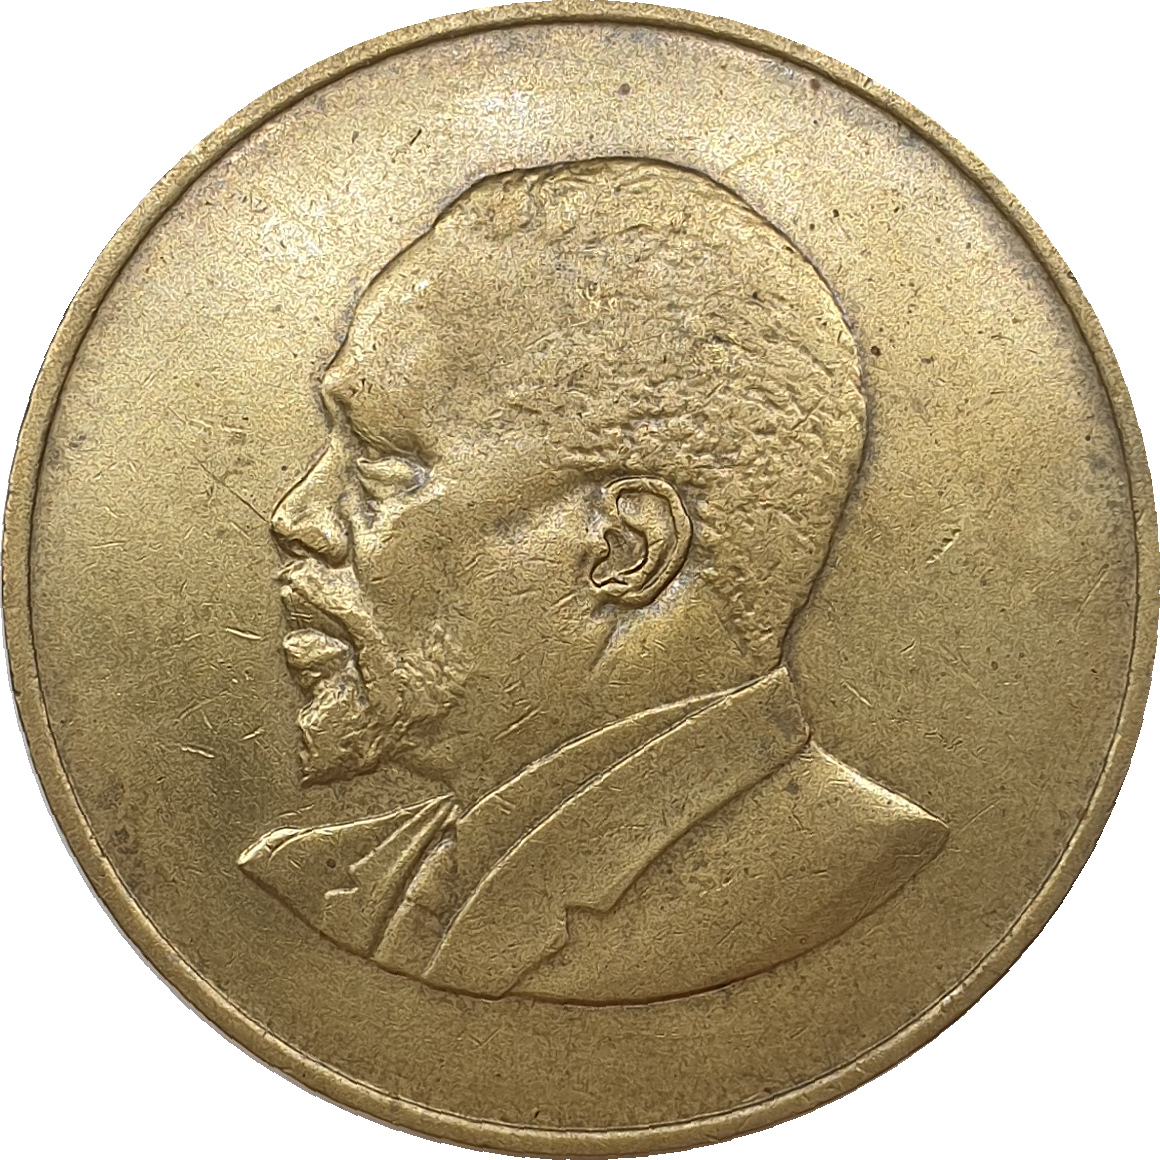 10 cents - Mzee Jomo Kenyatta - No legend